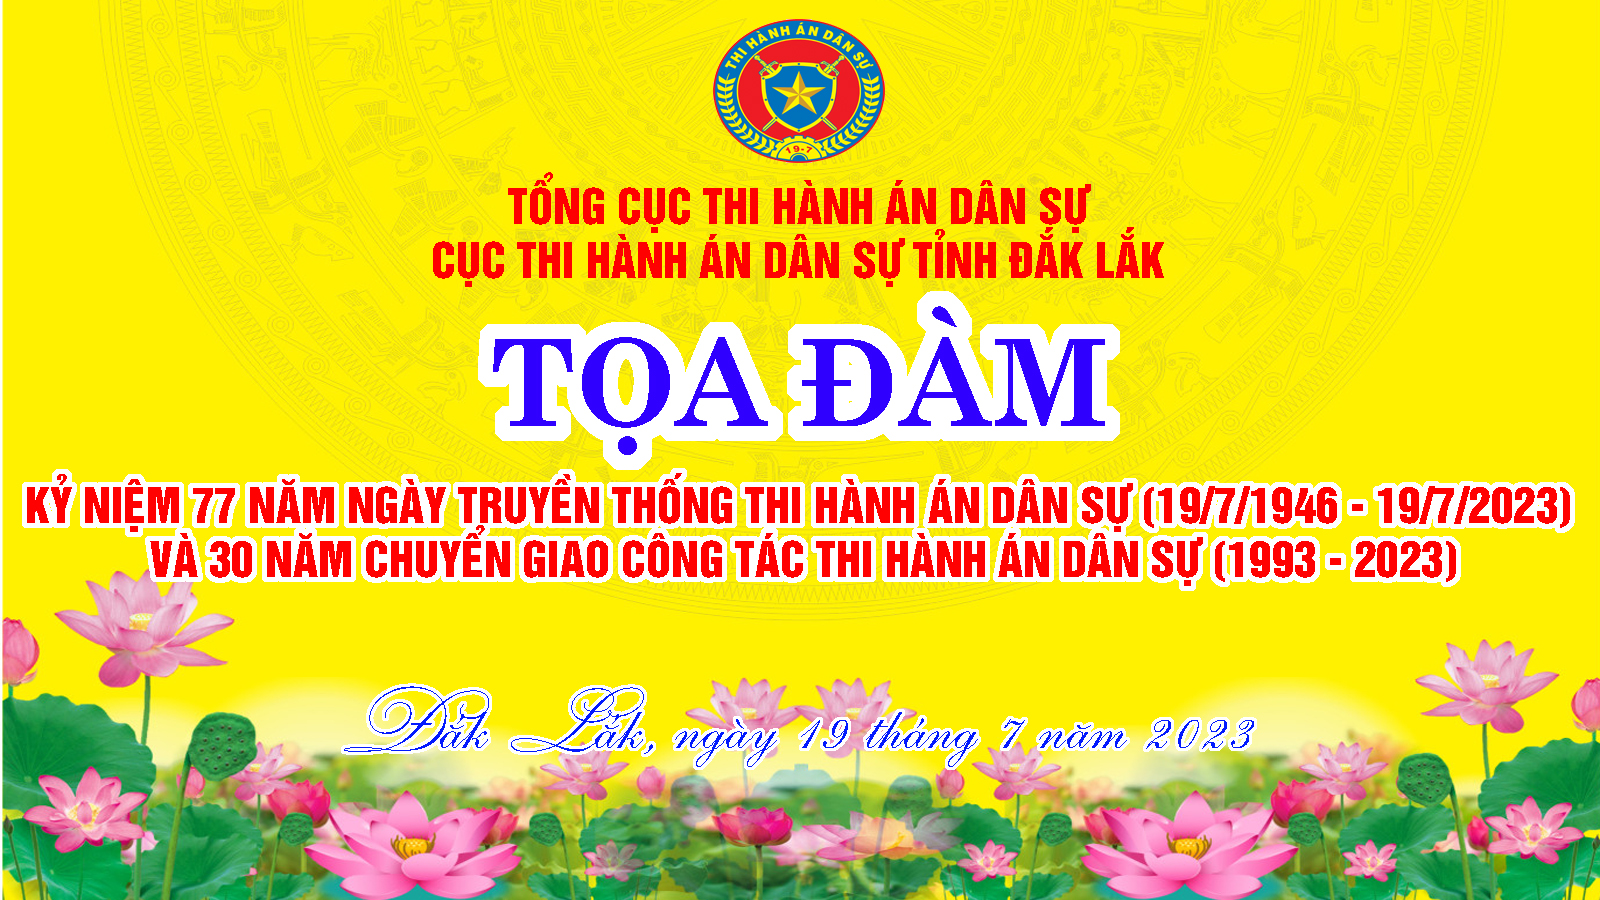 Cục Thi hành án dân sự  tỉnh Đắk Lắk tổ chức Tọa đàm nhân dịp Kỷ niệm 77 năm Ngày Truyền thống Thi hành án dân sự và 30 năm chuyển giao công tác thi hành án dân sự